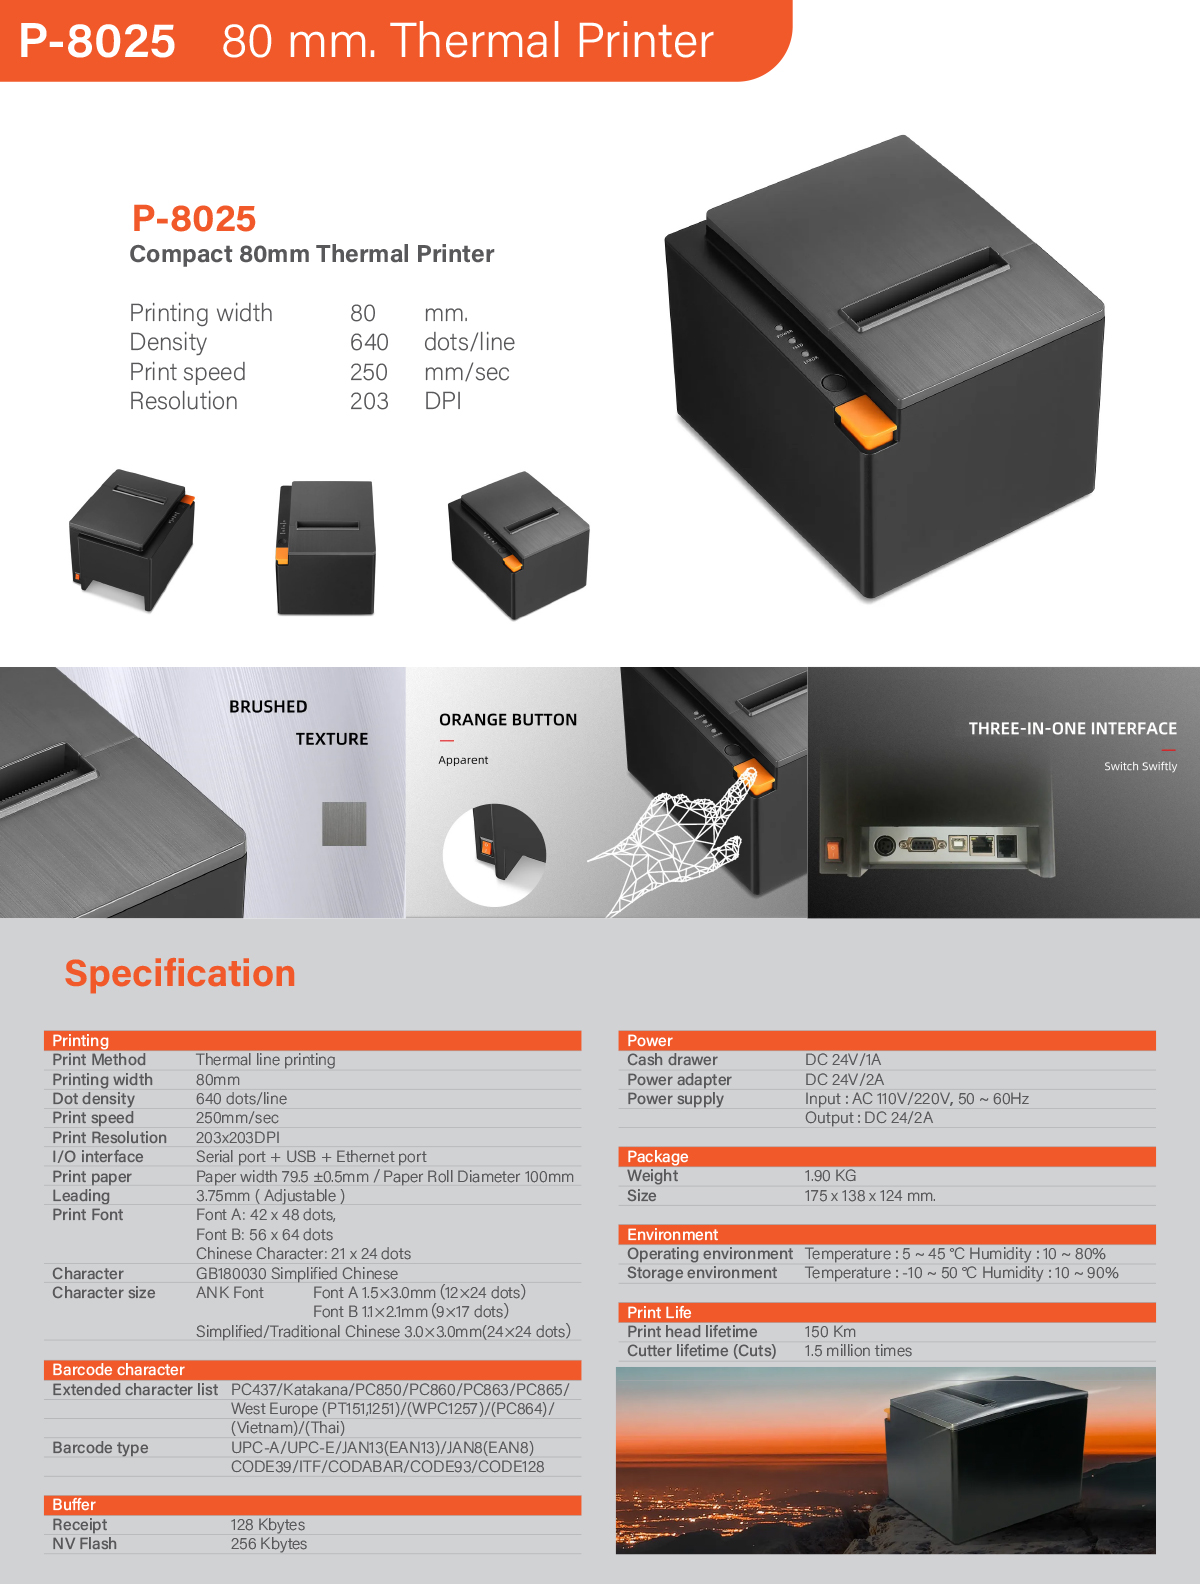 P-8025 Thermal Printer